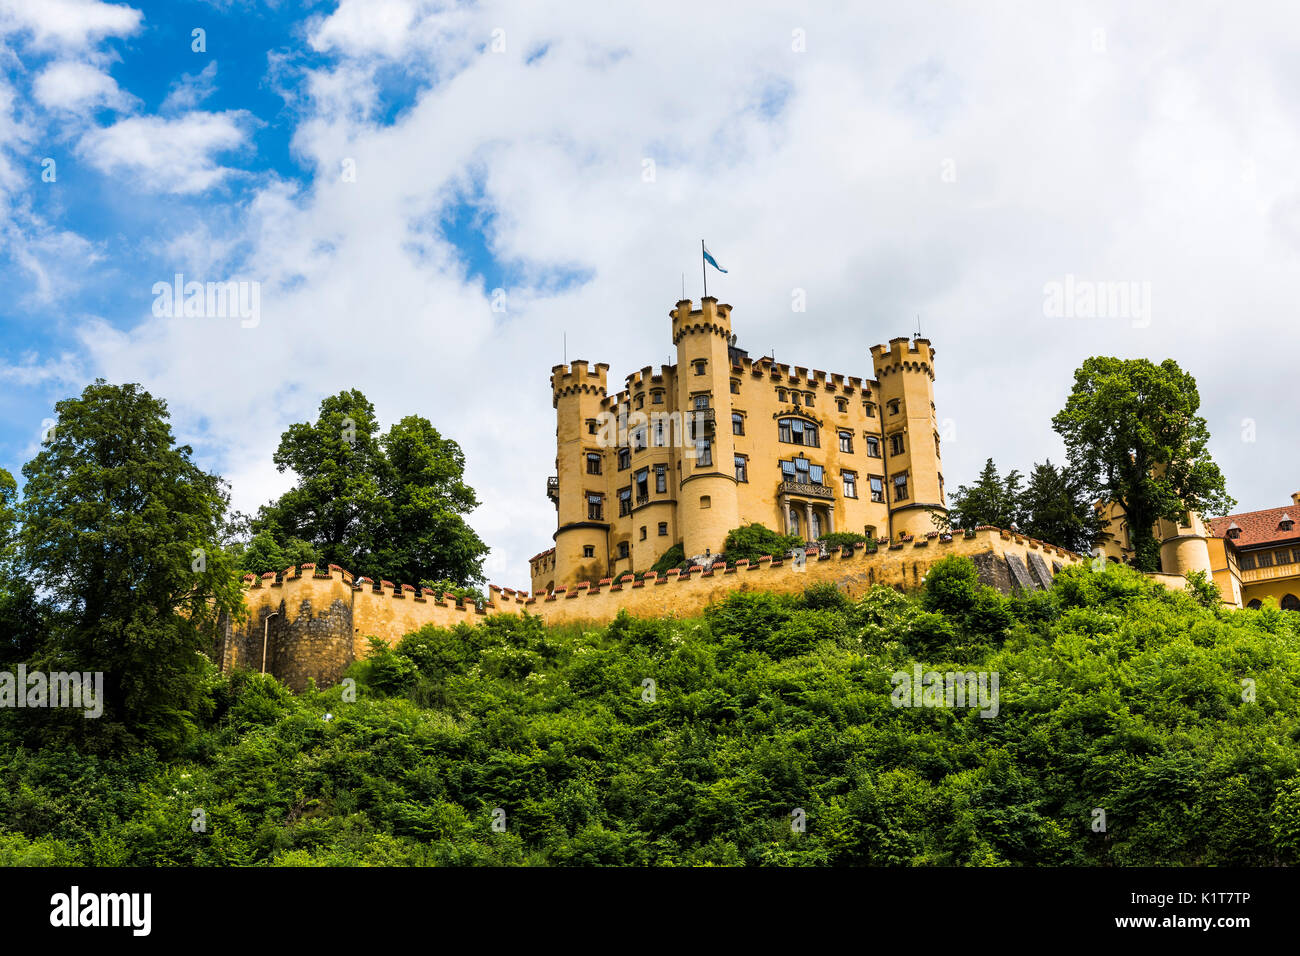 Hohenschwangau Castillo es un palacio del siglo XIX en el sur de Alemania y uno de los más famosos residentes fue el rey Luis II de Baviera. Foto de stock